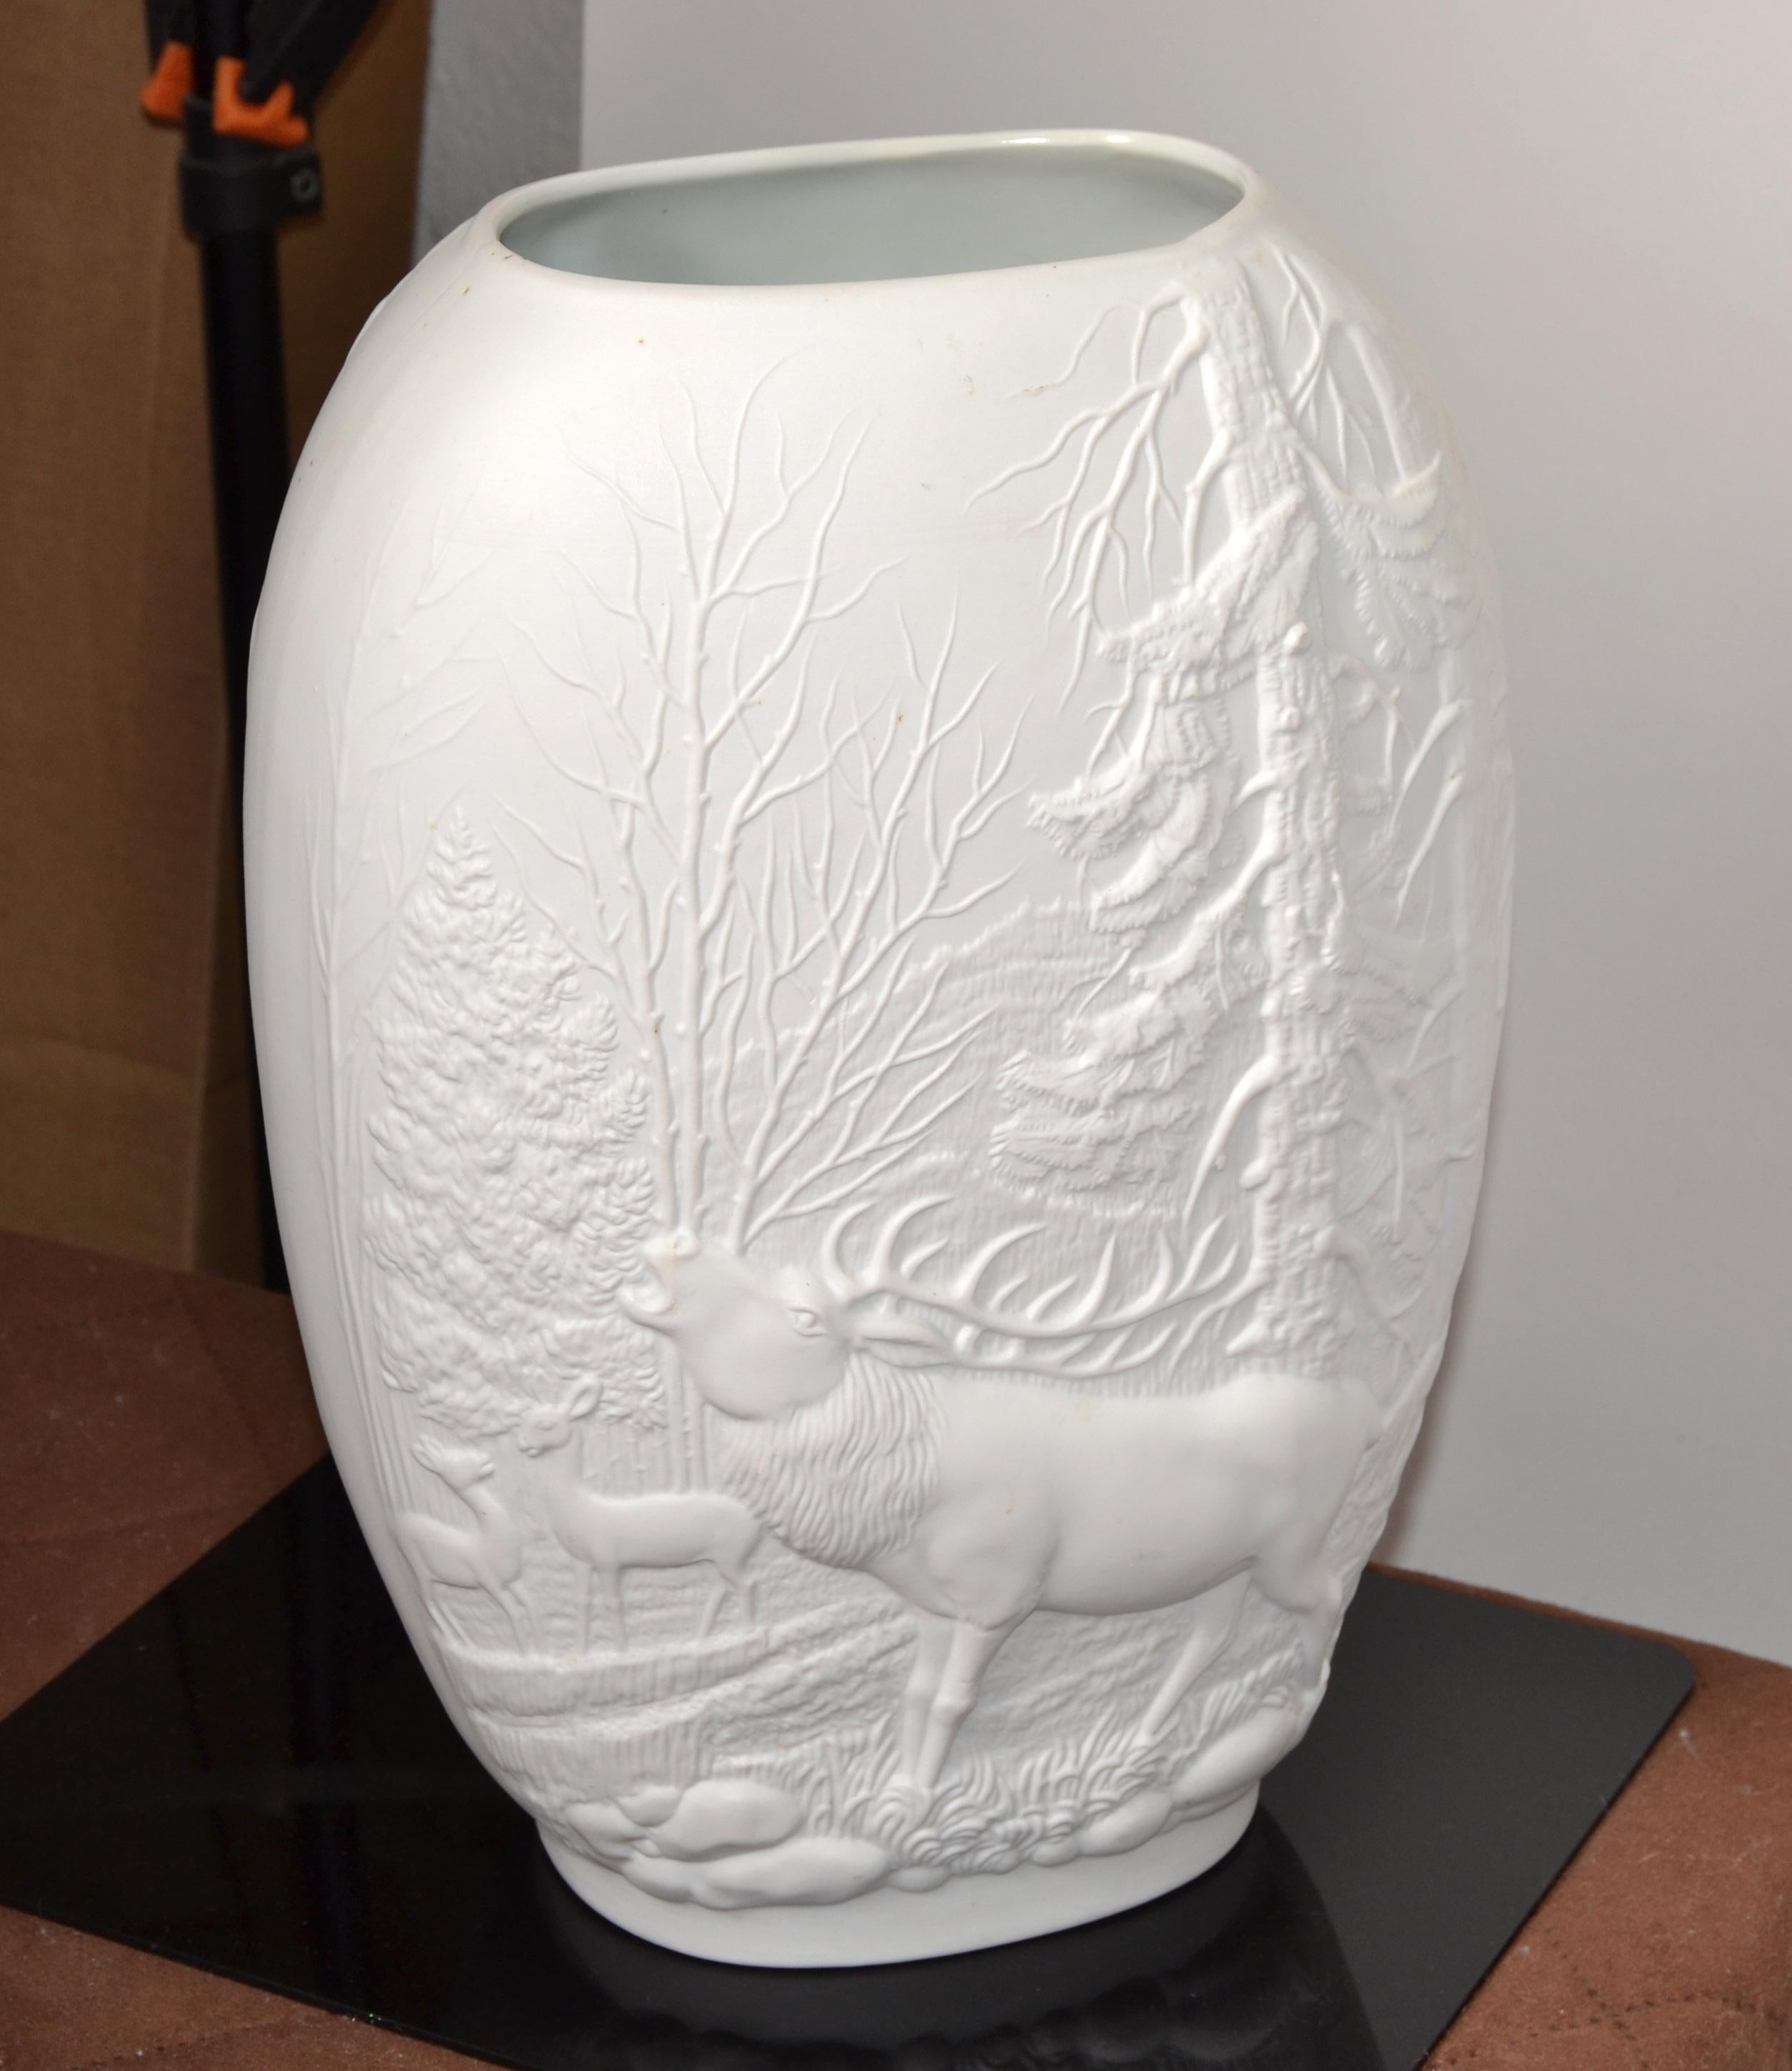 Mid-Century Modern Rosenthal Bavaria weiß Biskuit handgefertigt deutschen Royal Porcelain Op Art Relief Decor Blumenvase.
Weiße Vase aus Biskuitporzellan mit rustikalem Waldmotiv aus Hirschen und Kiefern, die diese ovale Vase zieren.
In schönem